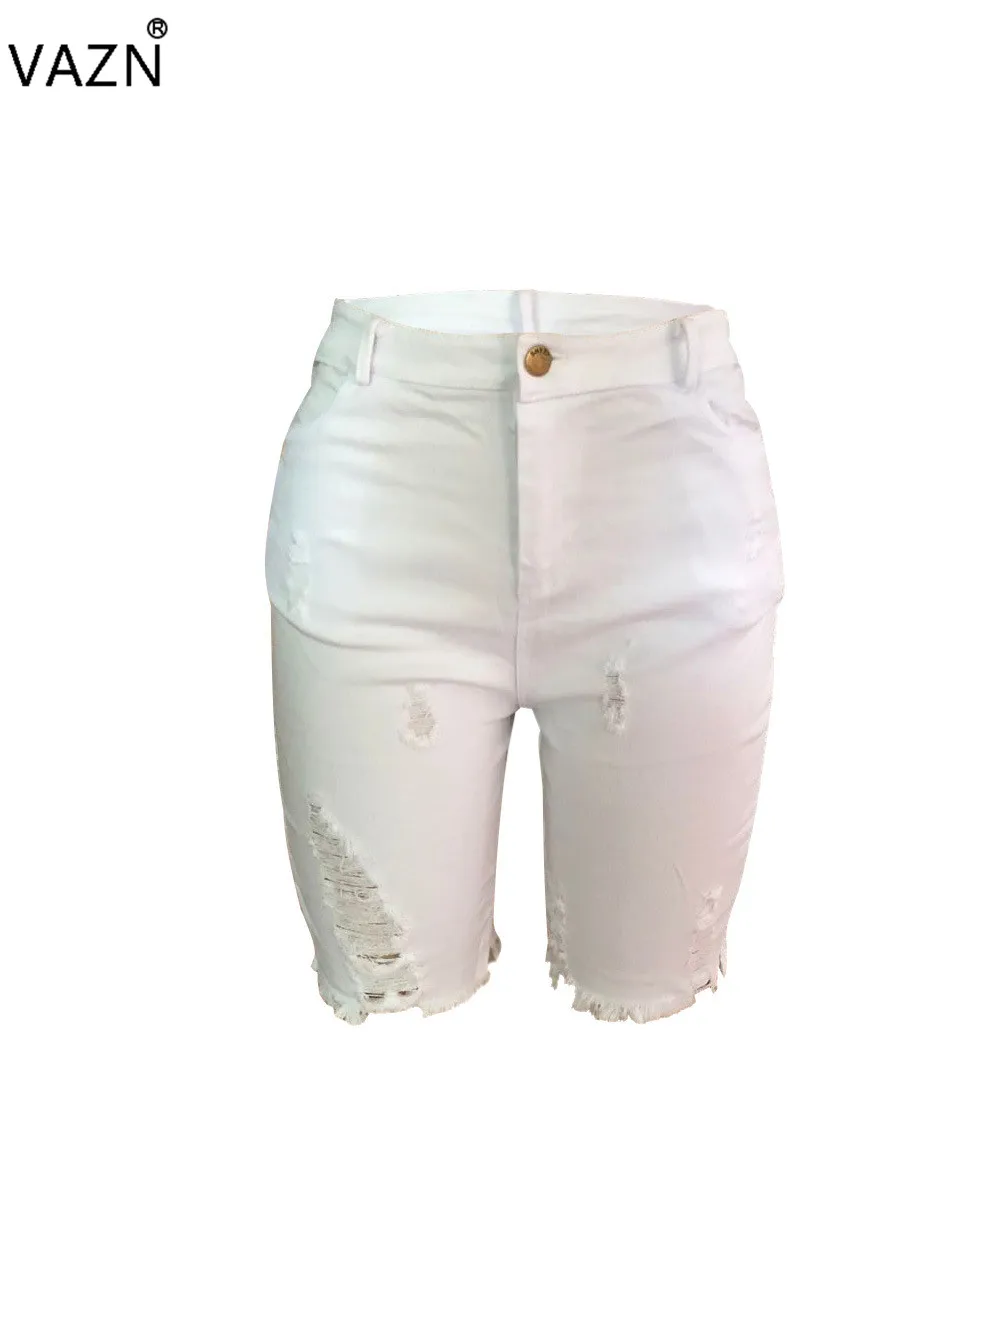 VAZN SM3261, новинка, летние сексуальные женские джинсы средней длины, 4 цвета, рваные джинсы-скинни с пуговицами, сексуальные модные джинсы со средней талией для девочек